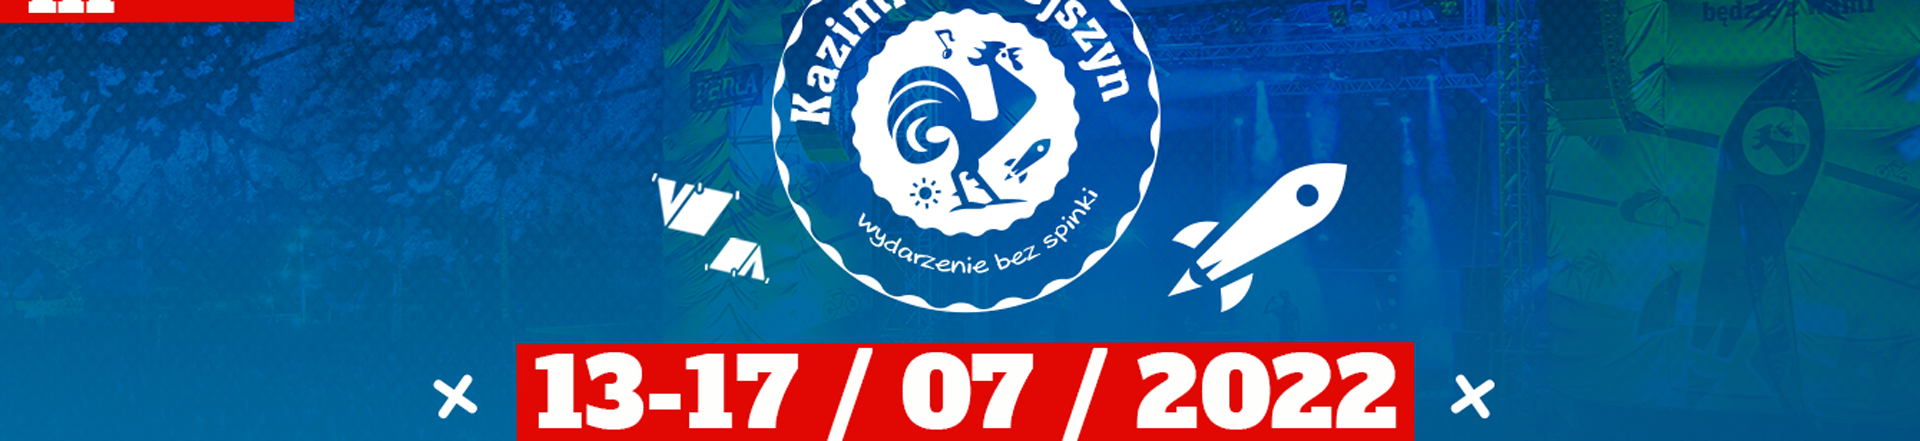 Kazimiernikejszyn 2022: ØRGANEK i T.Love pierwszymi gwiazdami tegorocznej edycji festiwalu 